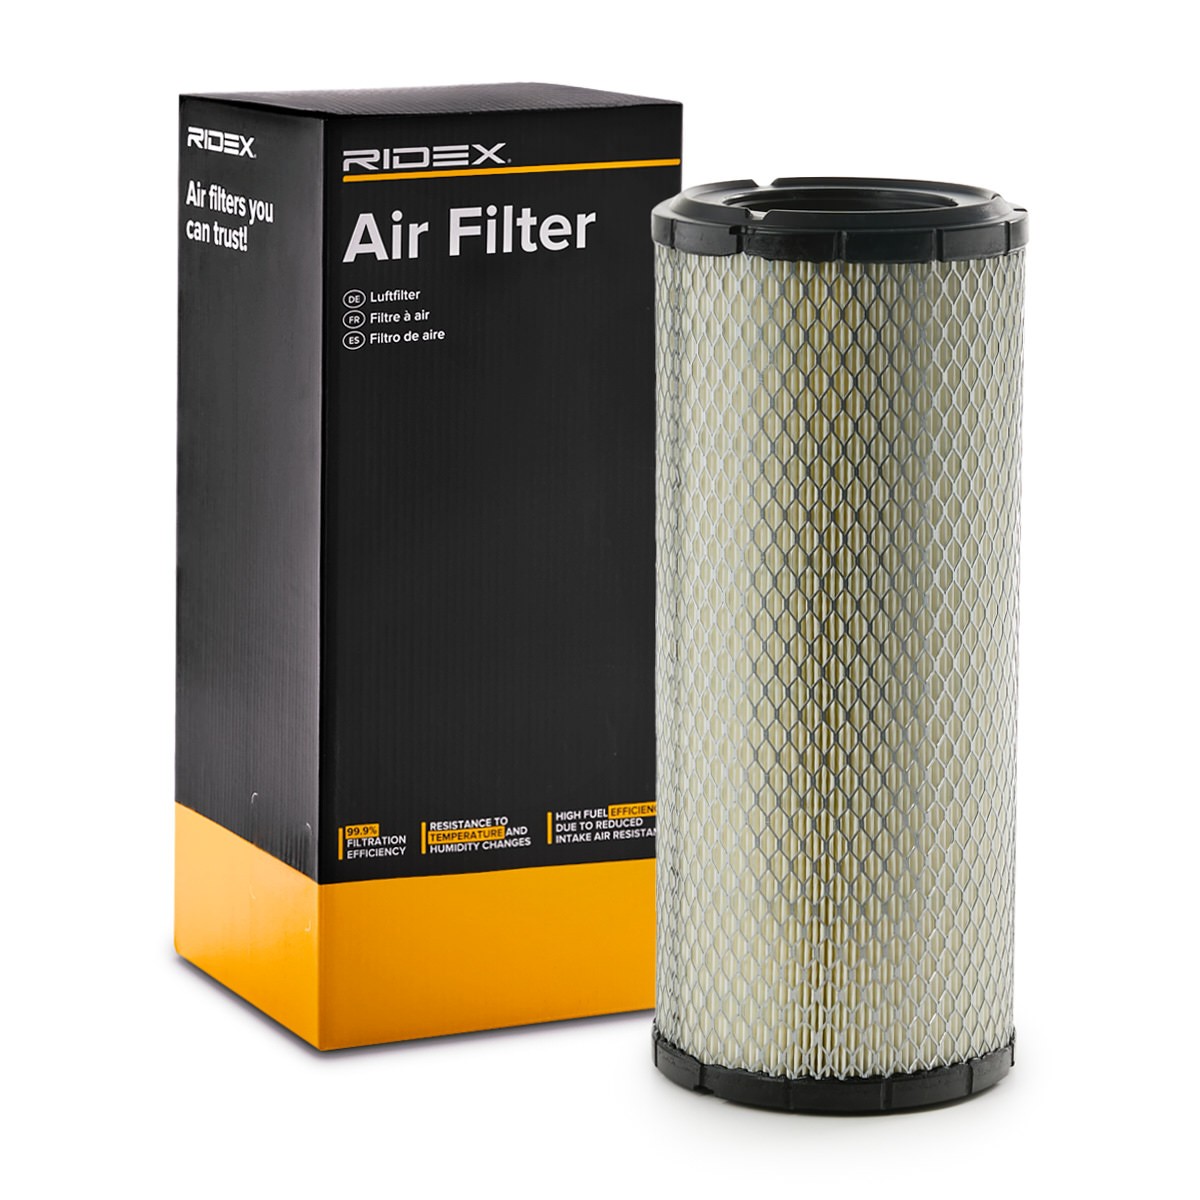 RIDEX 8A0428 Air filter 326mm, 139mm, Filter Insert